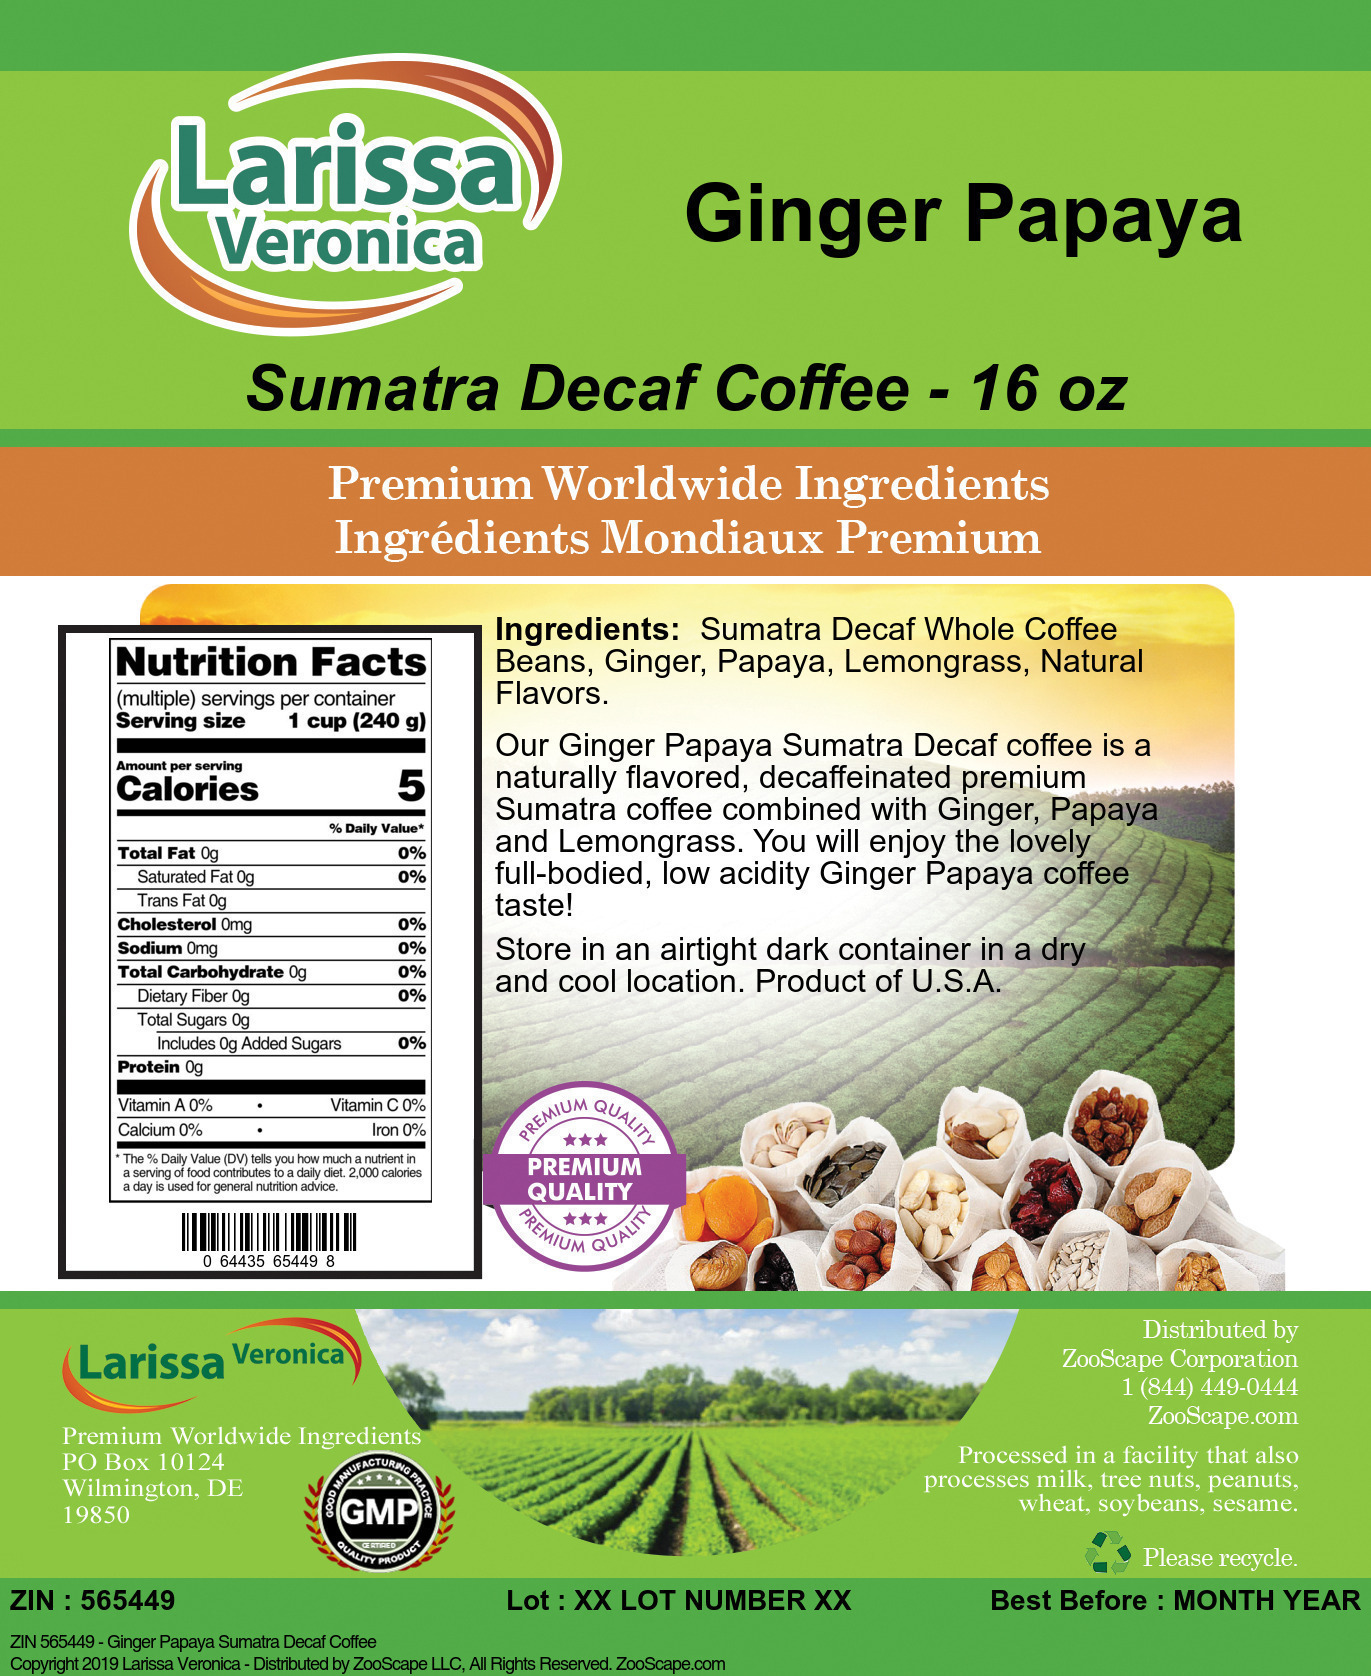 Ginger Papaya Sumatra Decaf Coffee - Label